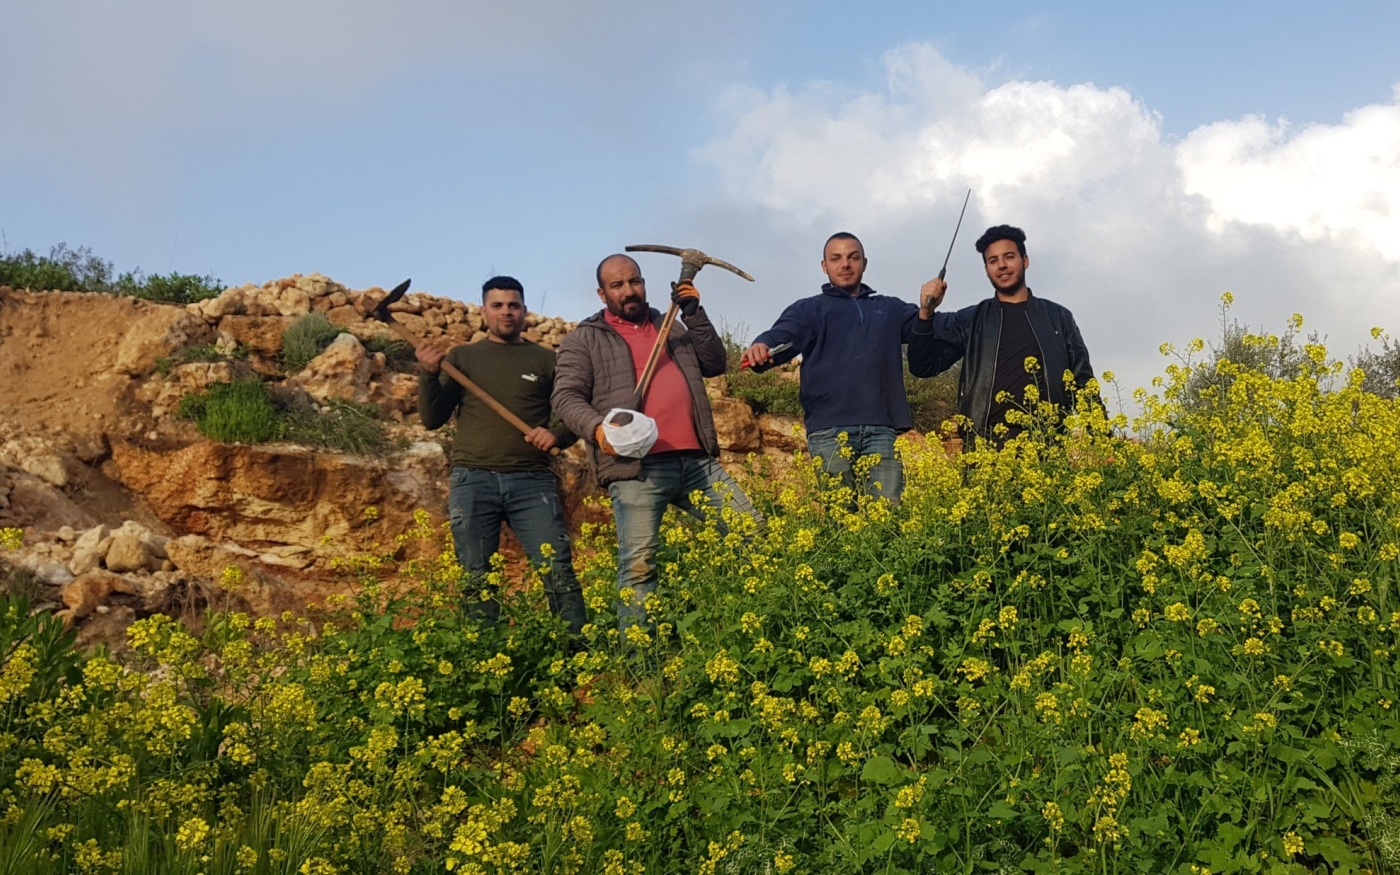 Murad Sartawi et ses amis en route pour cultiver leurs terres à Sarta, en mars 2020 (Murad Sartawi)